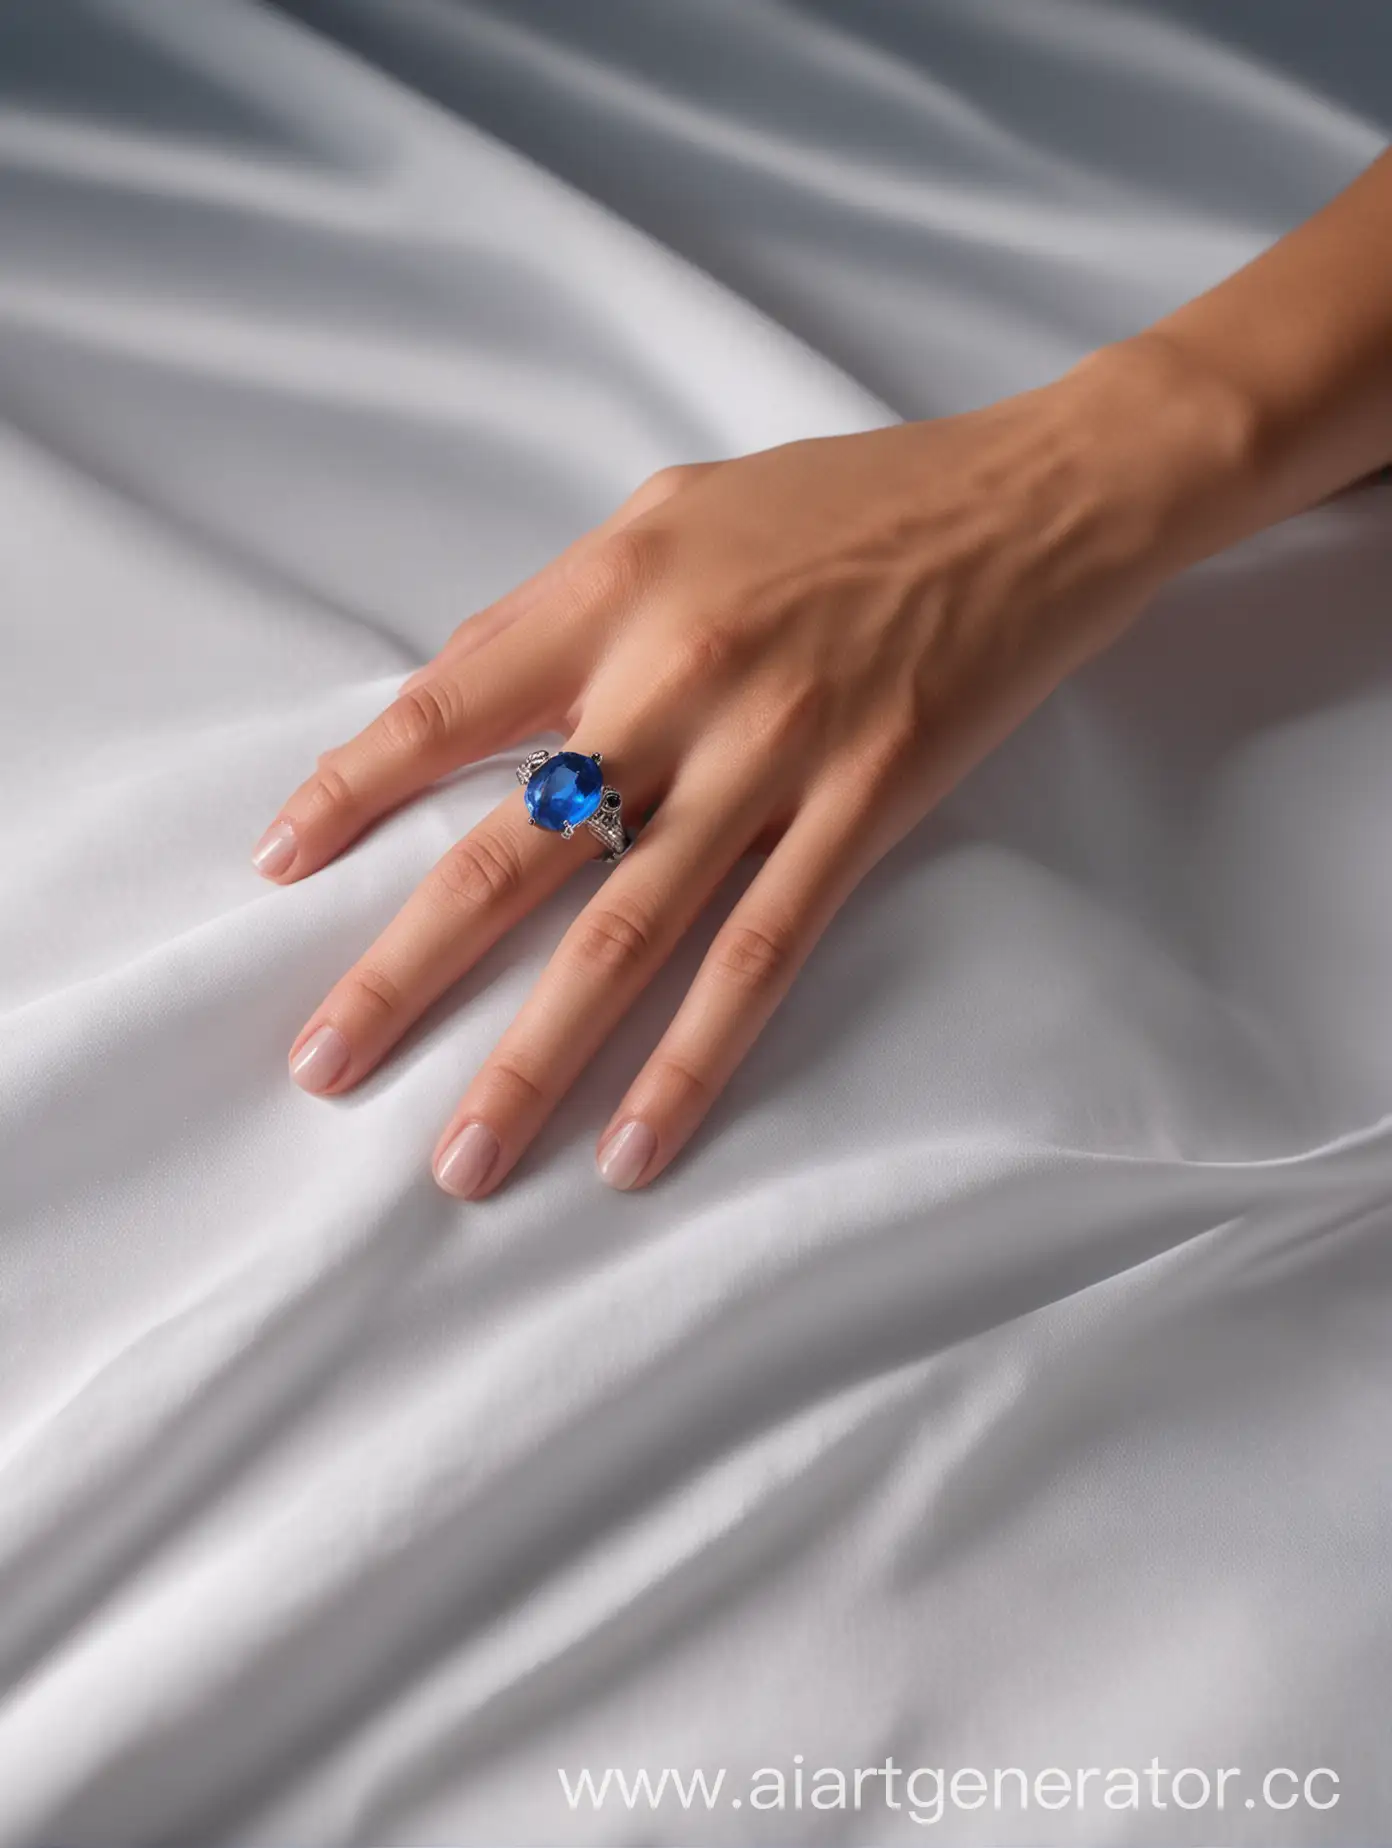 Приведение под белой простыней показывается из тени держа перед собой на ладошке перстень с голубым камнем